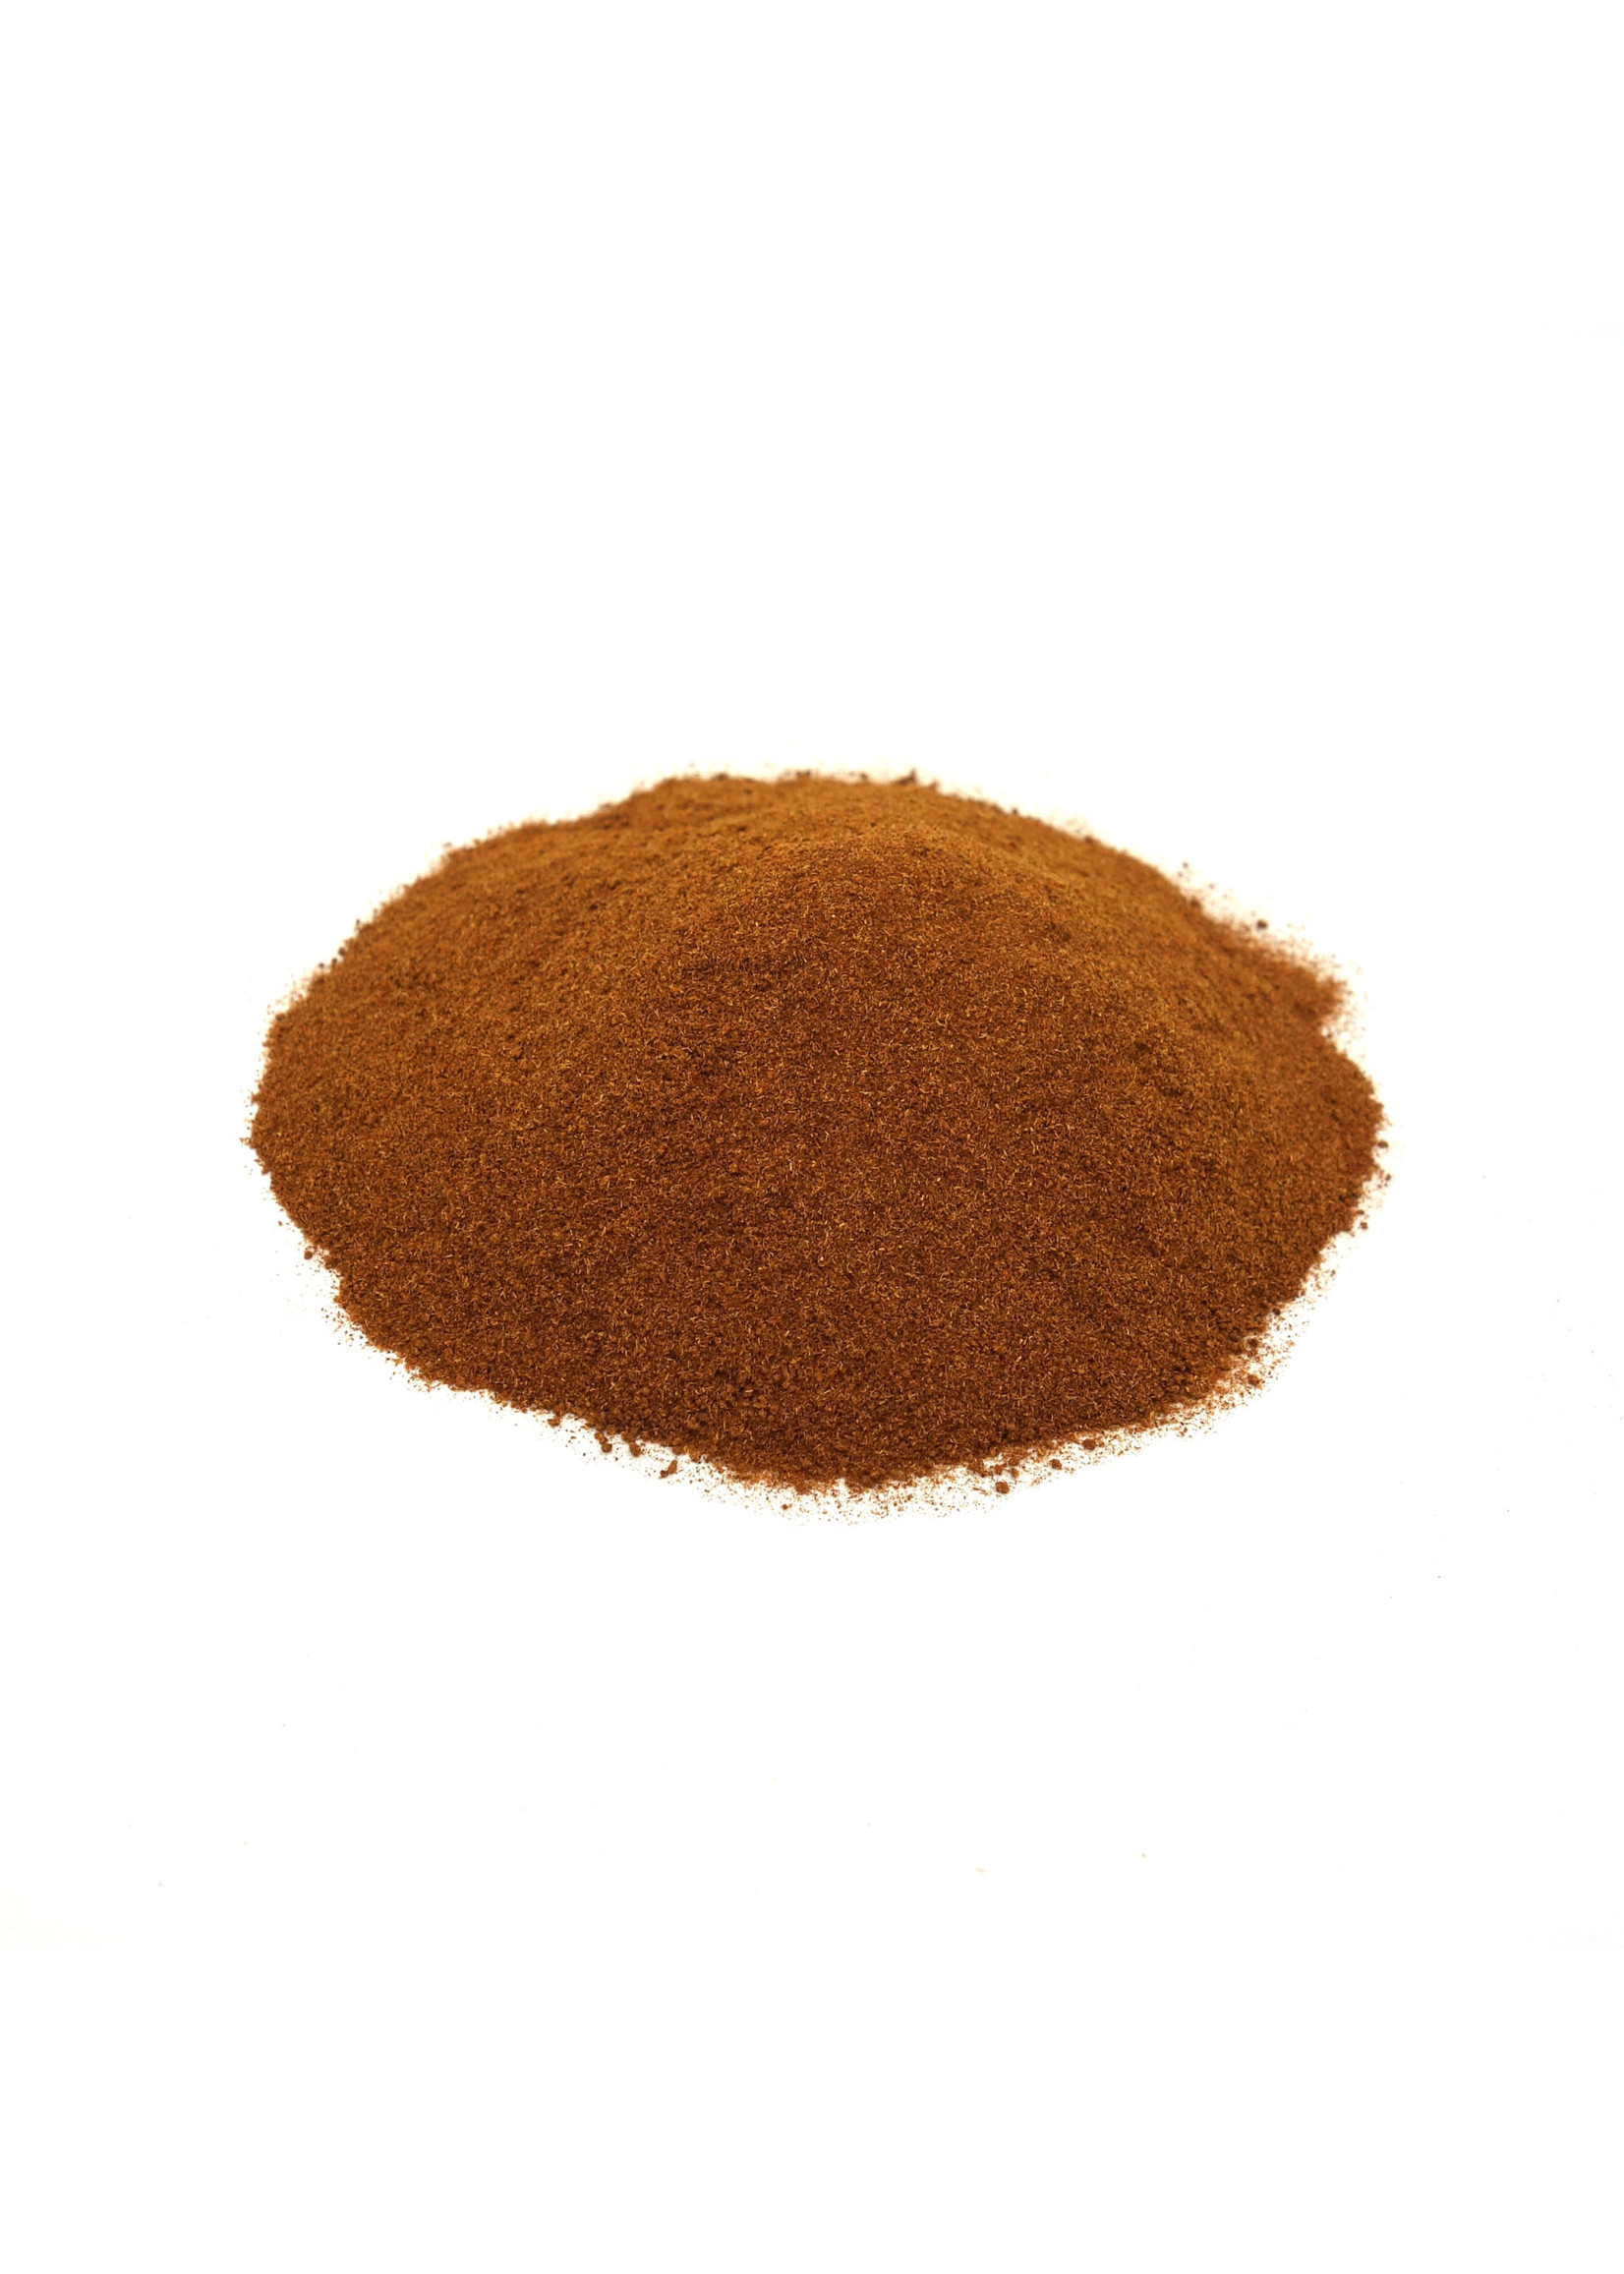 Catuaba Bark powder